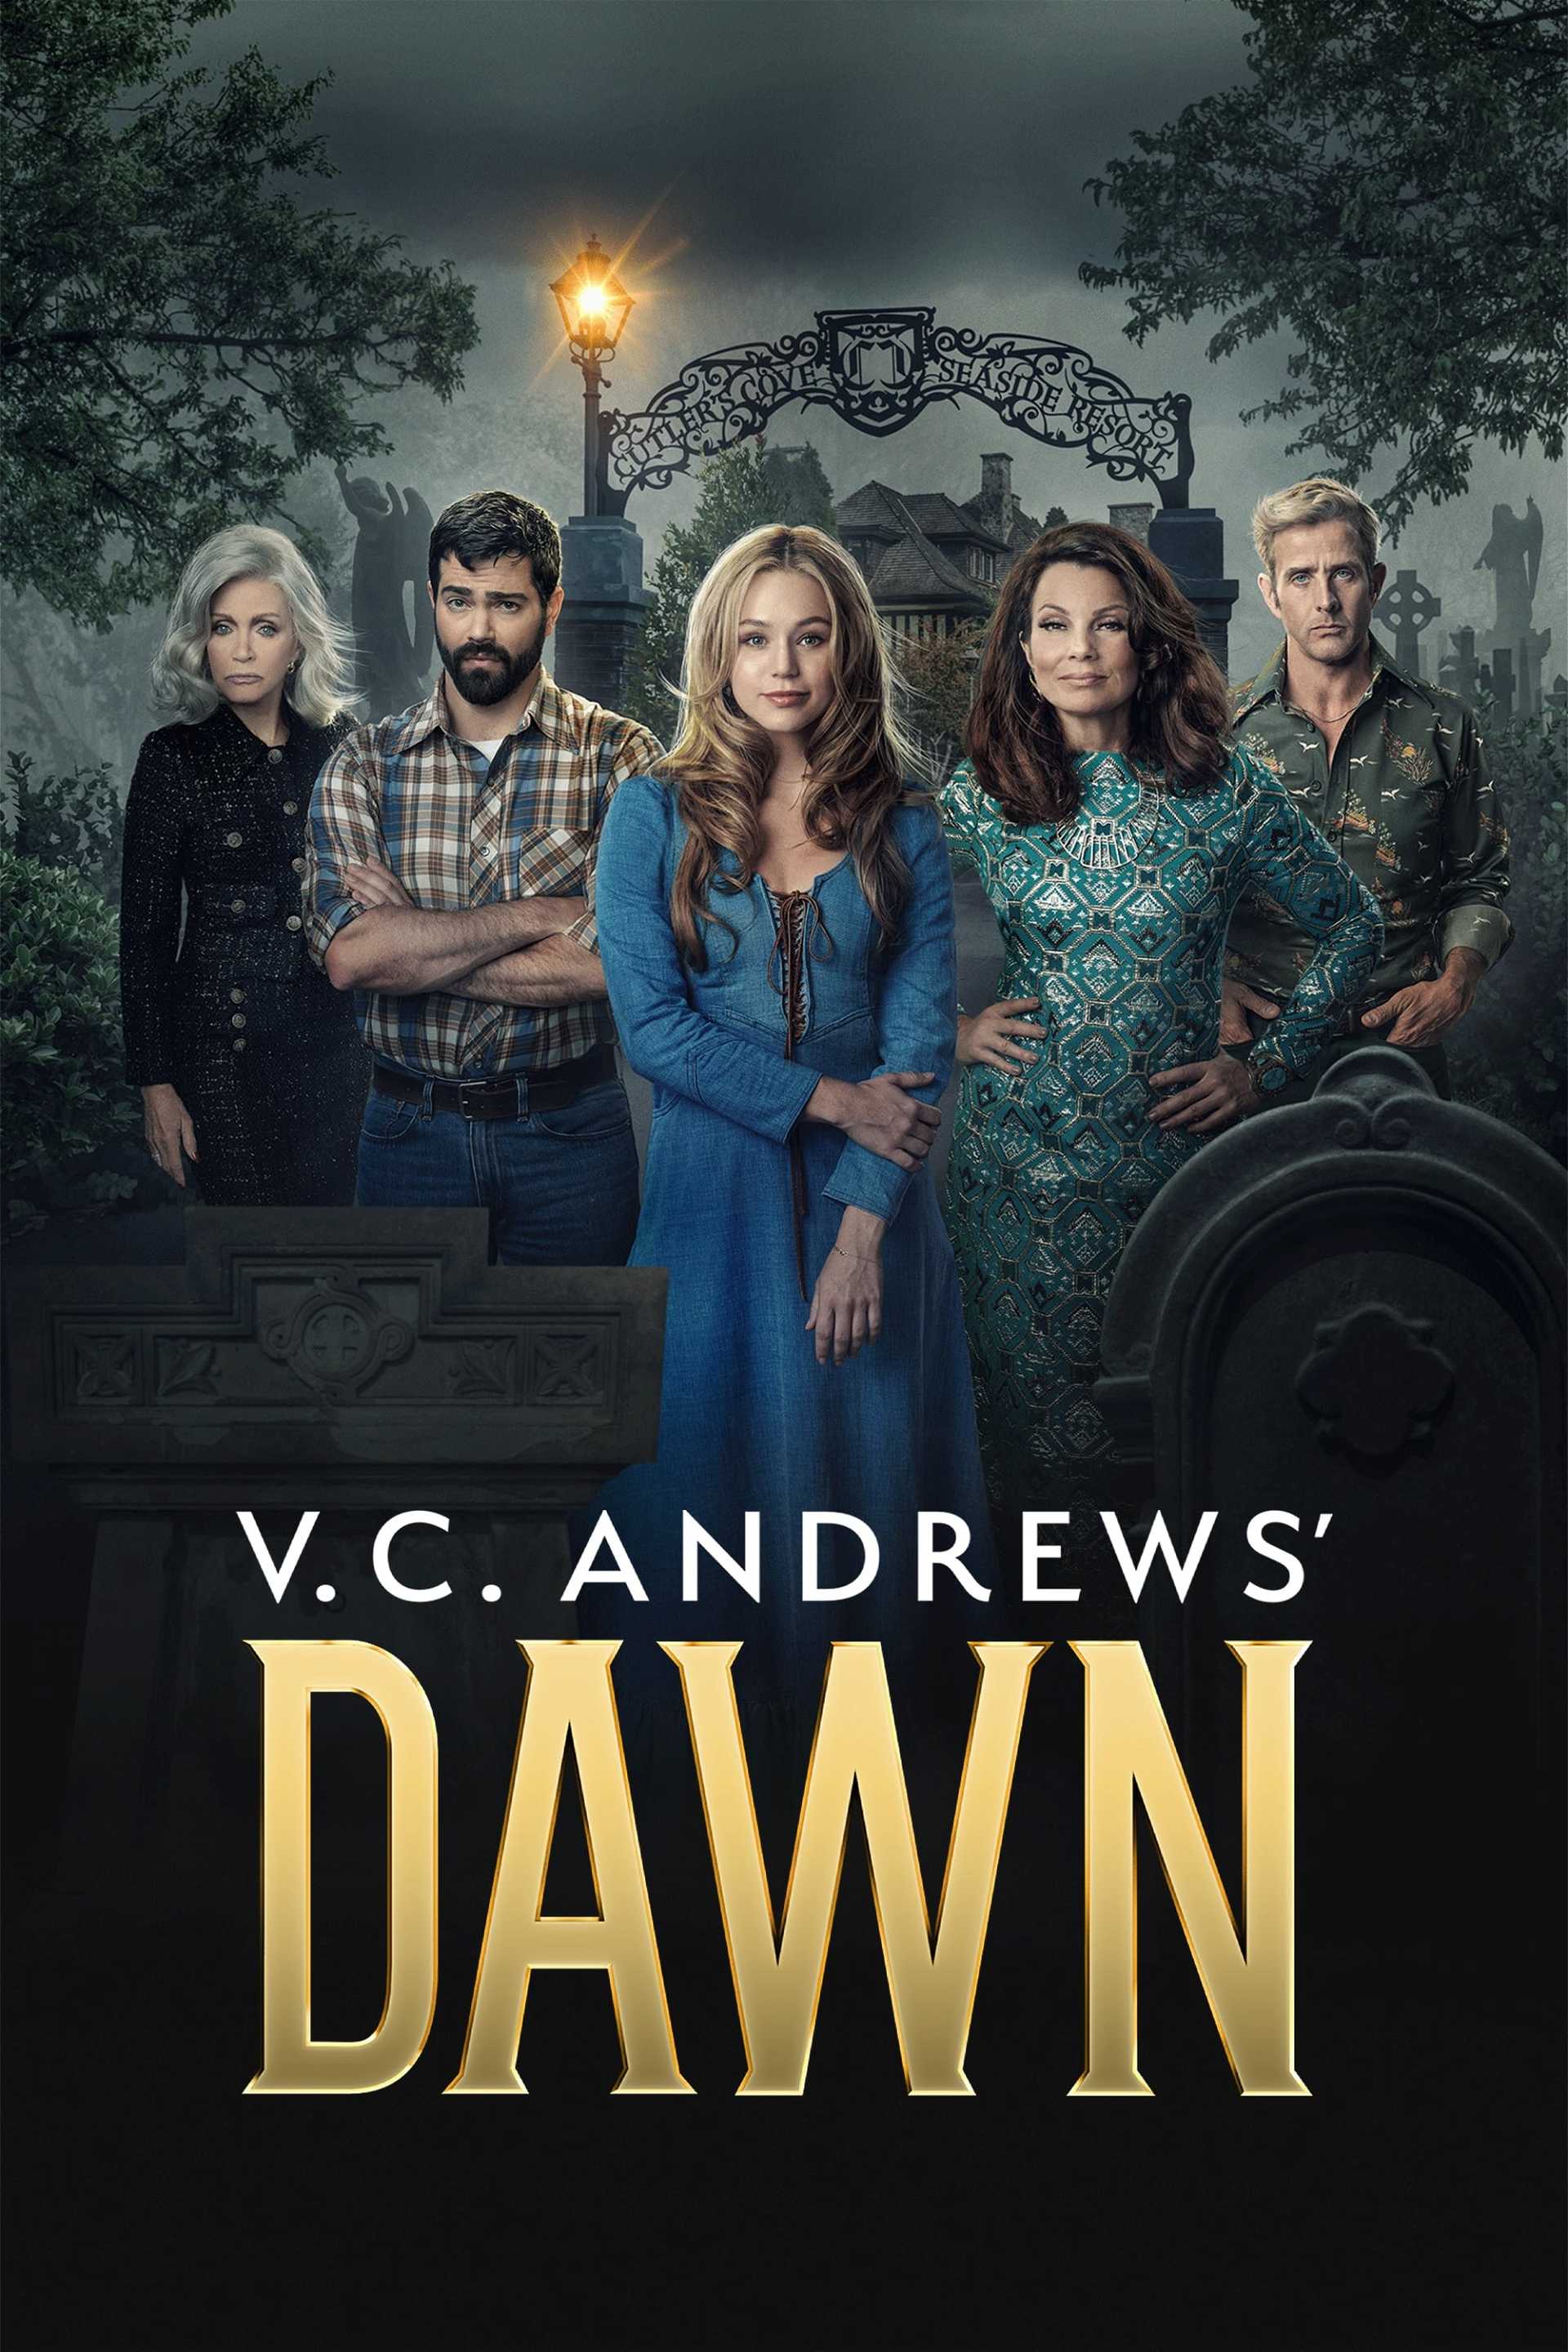 V.C. Andrews' Dawn in streaming